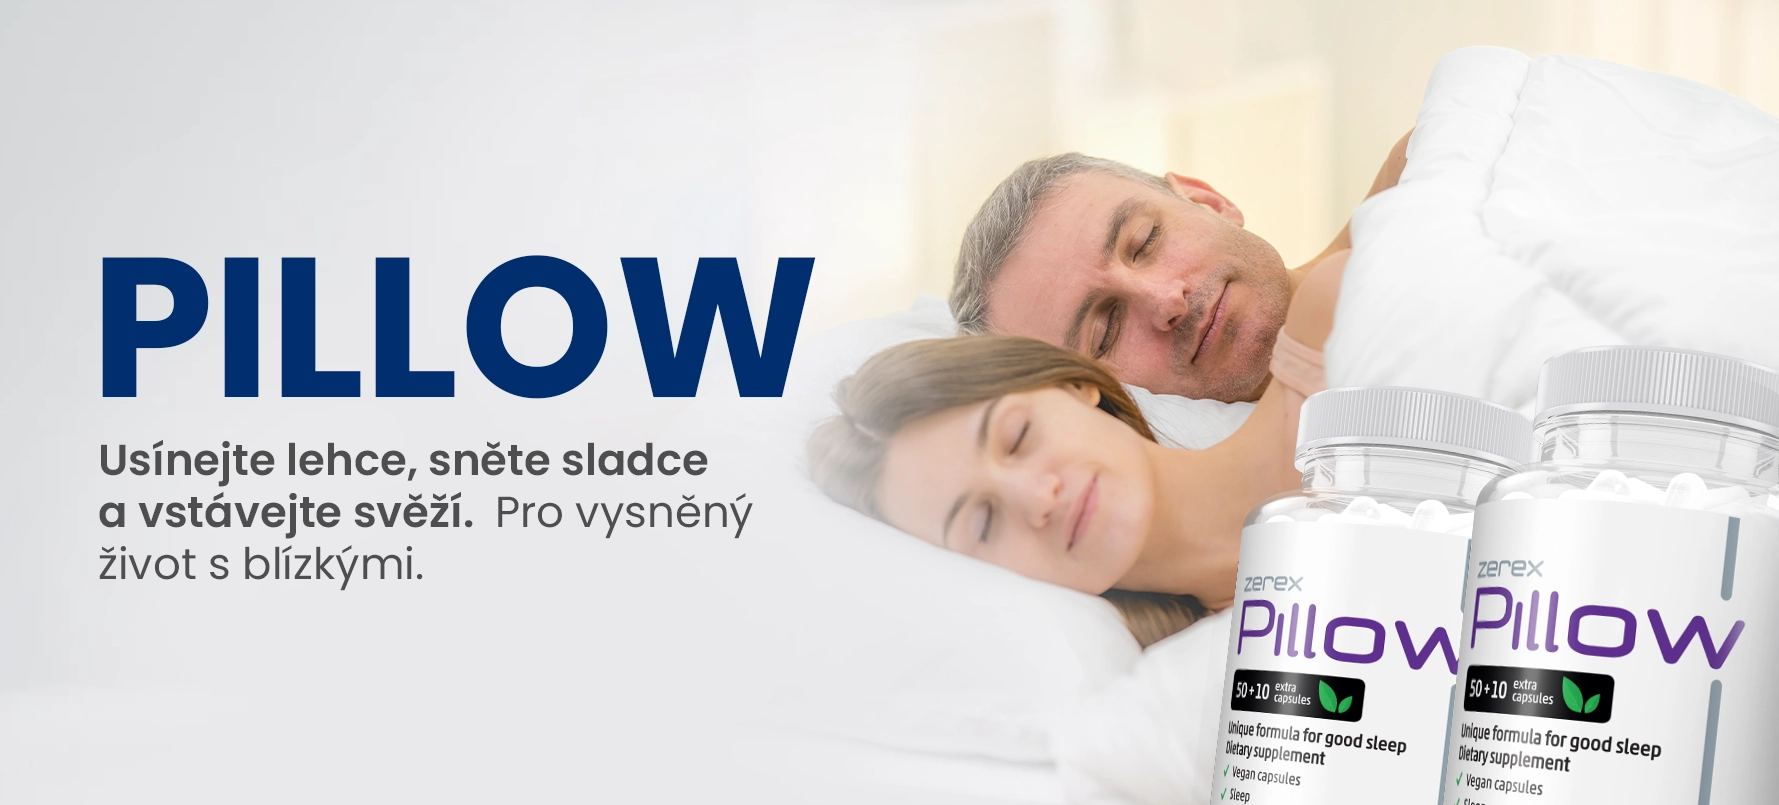 Zerex Pillow – přírodní přípravek na kvalitní spánek